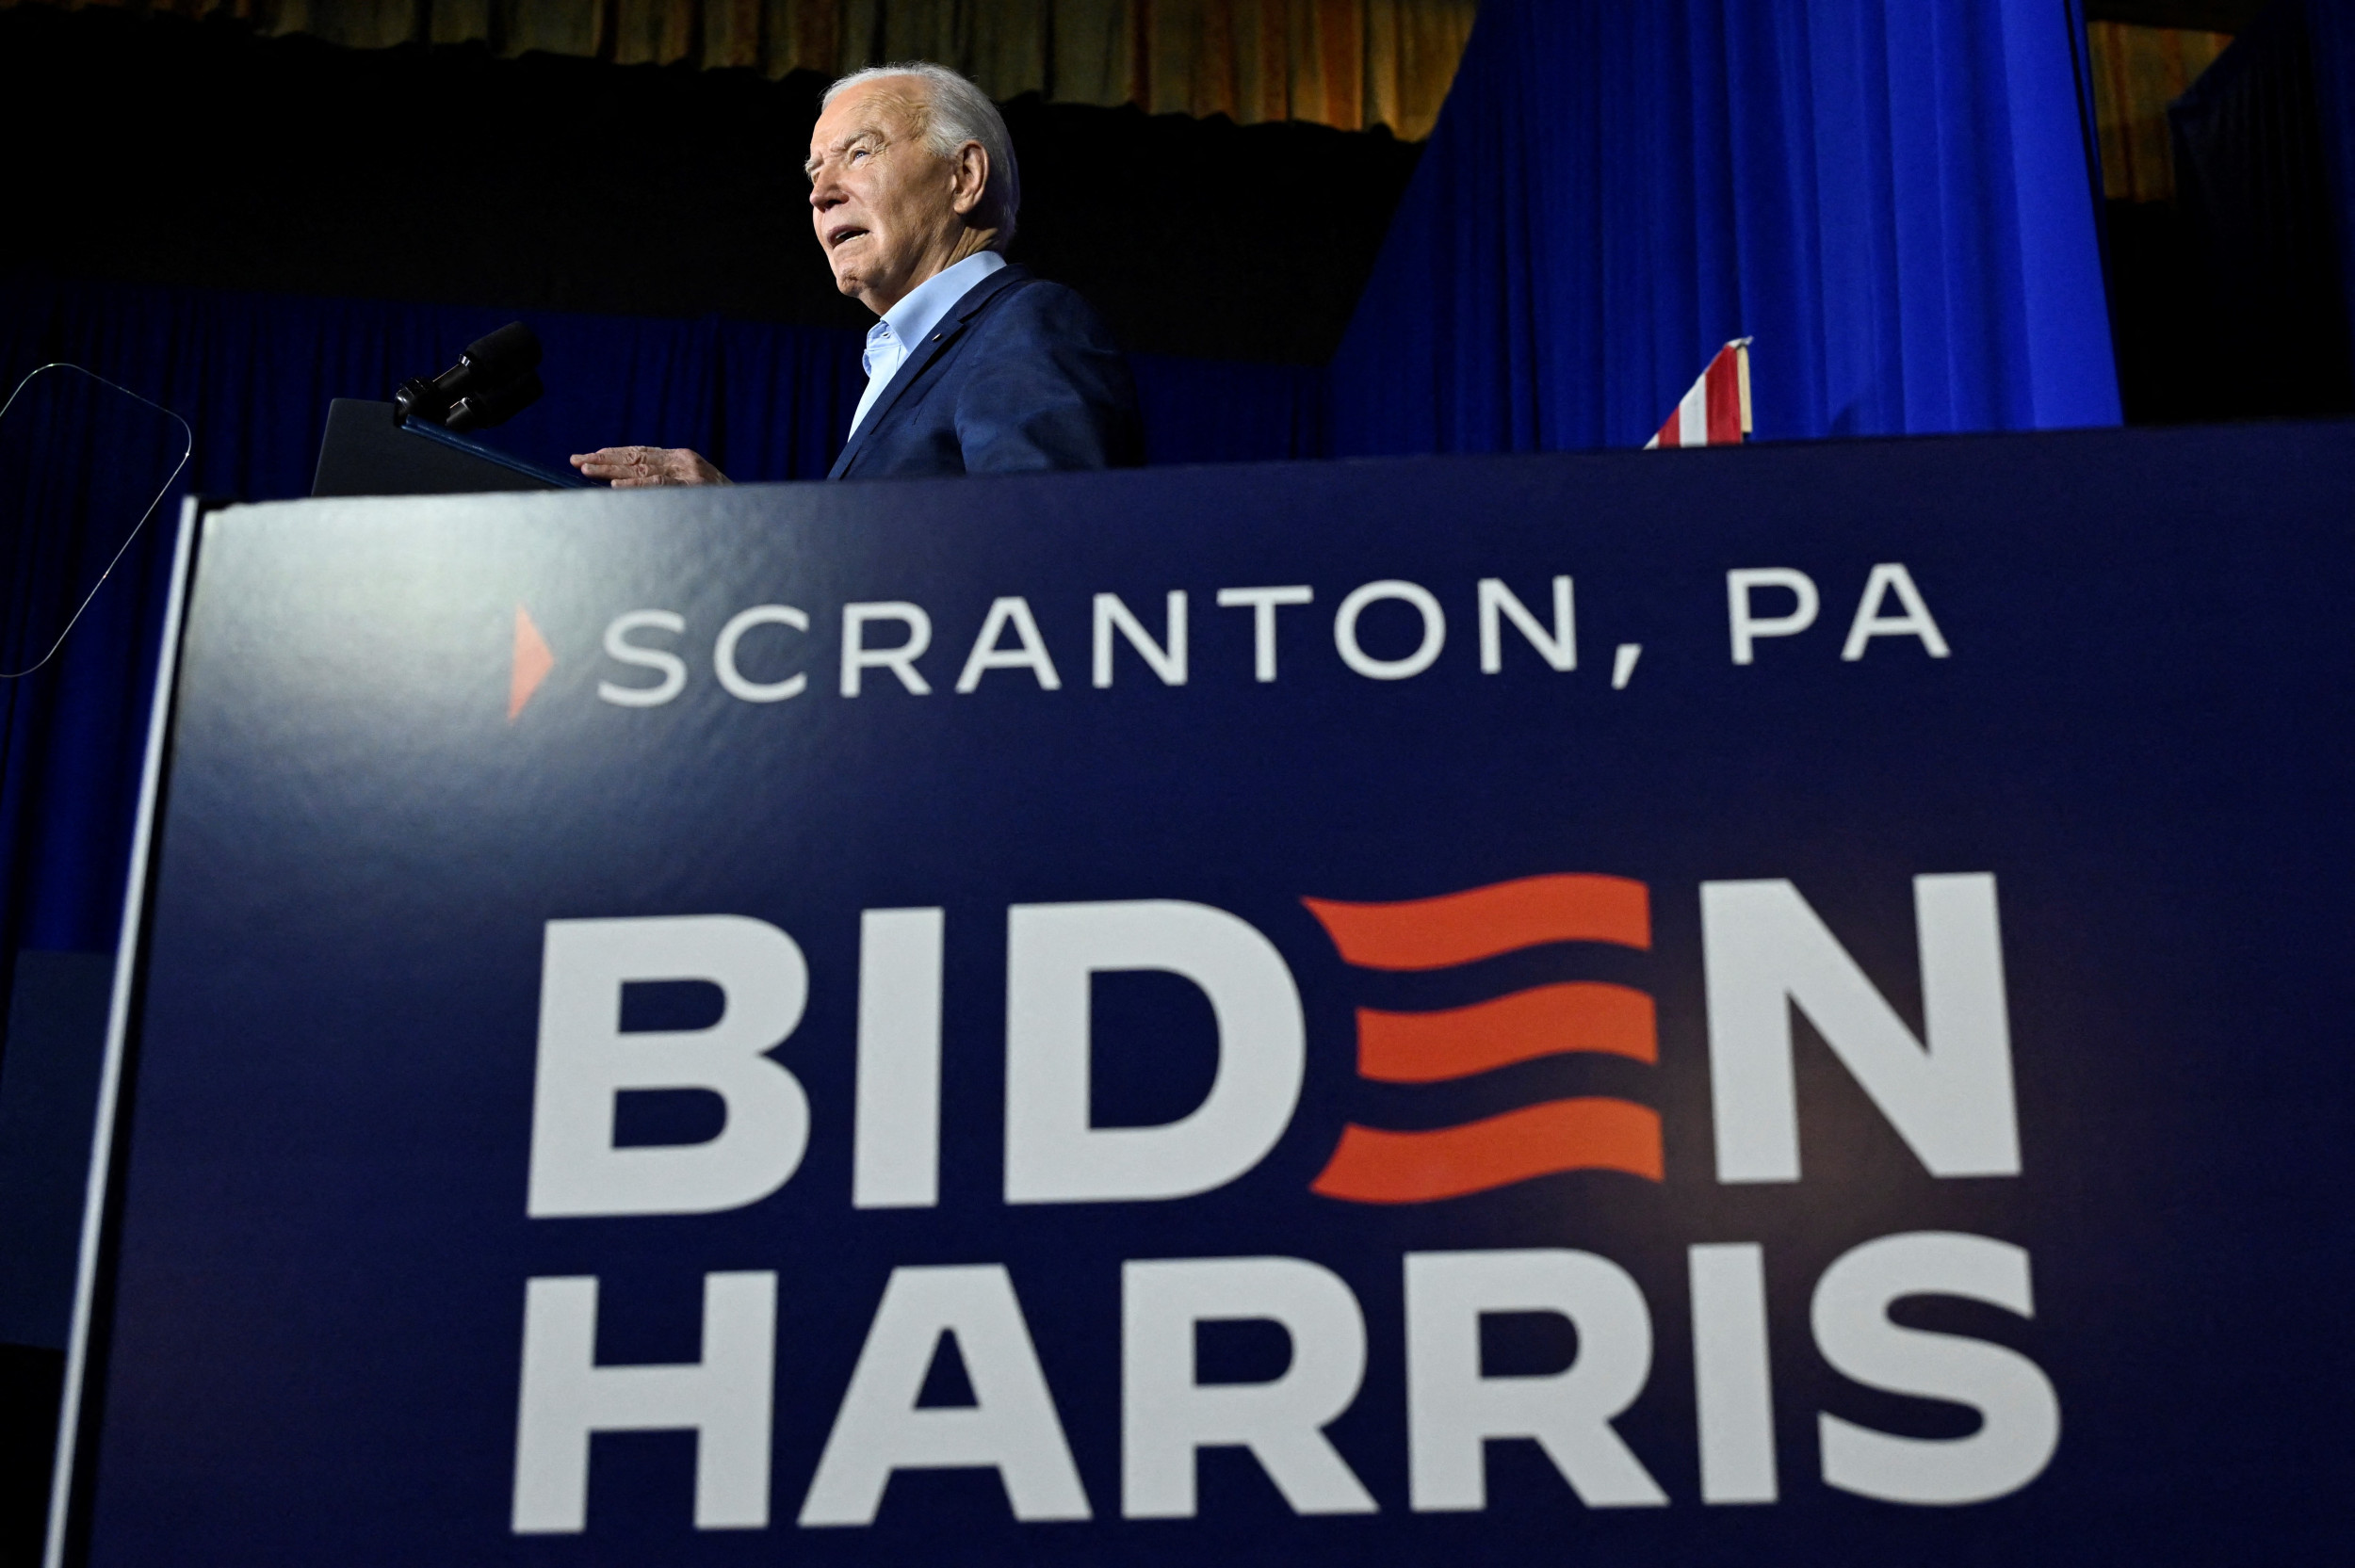 Heeft Joe Biden met lege stoelen in Scranton gesproken?  Een foto van het evenement gaat viraal